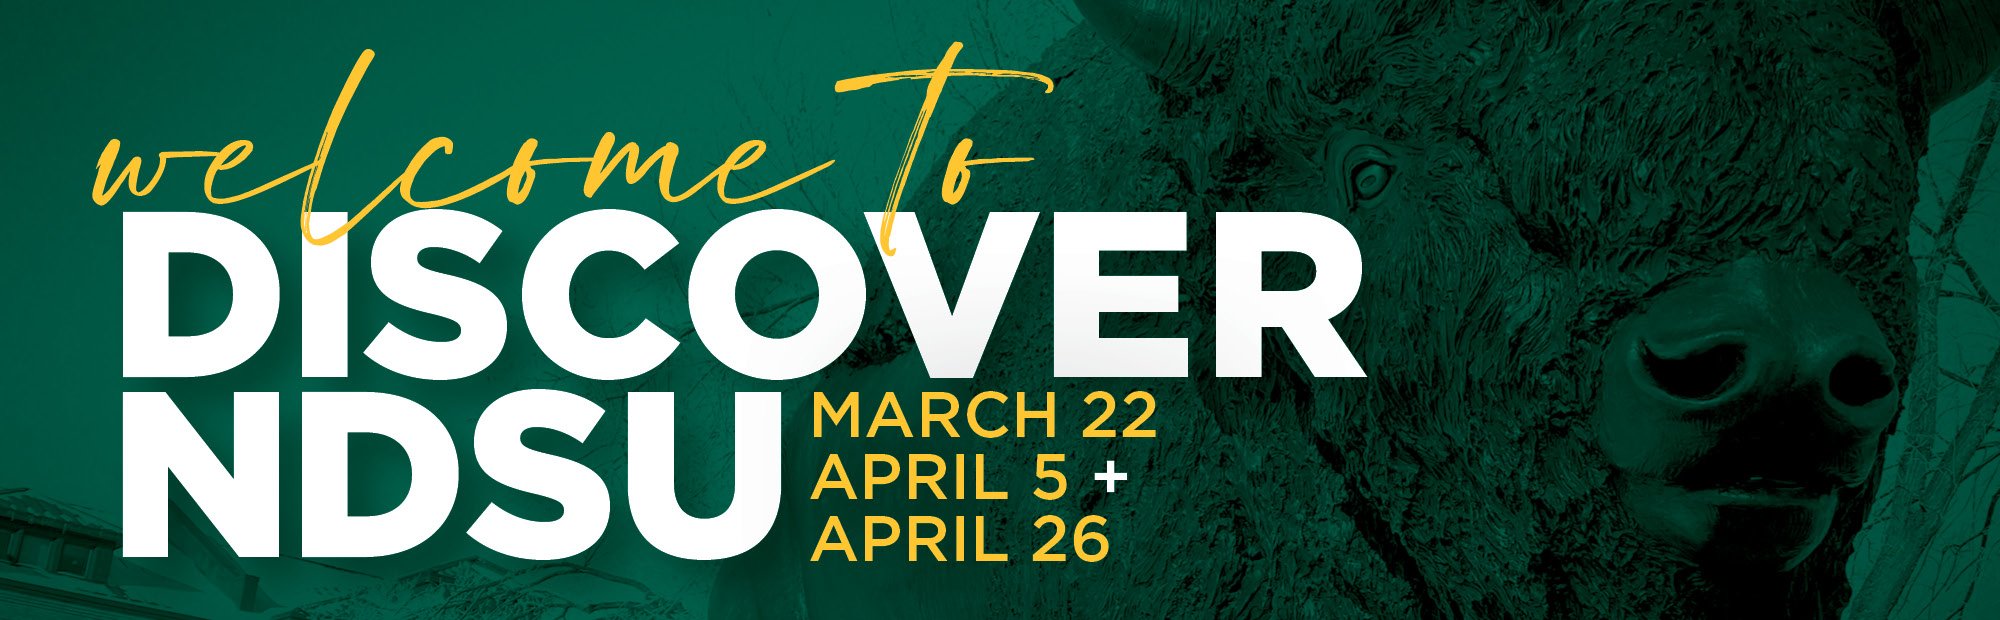 Discover NDSU, March 22, April 5 and April 26